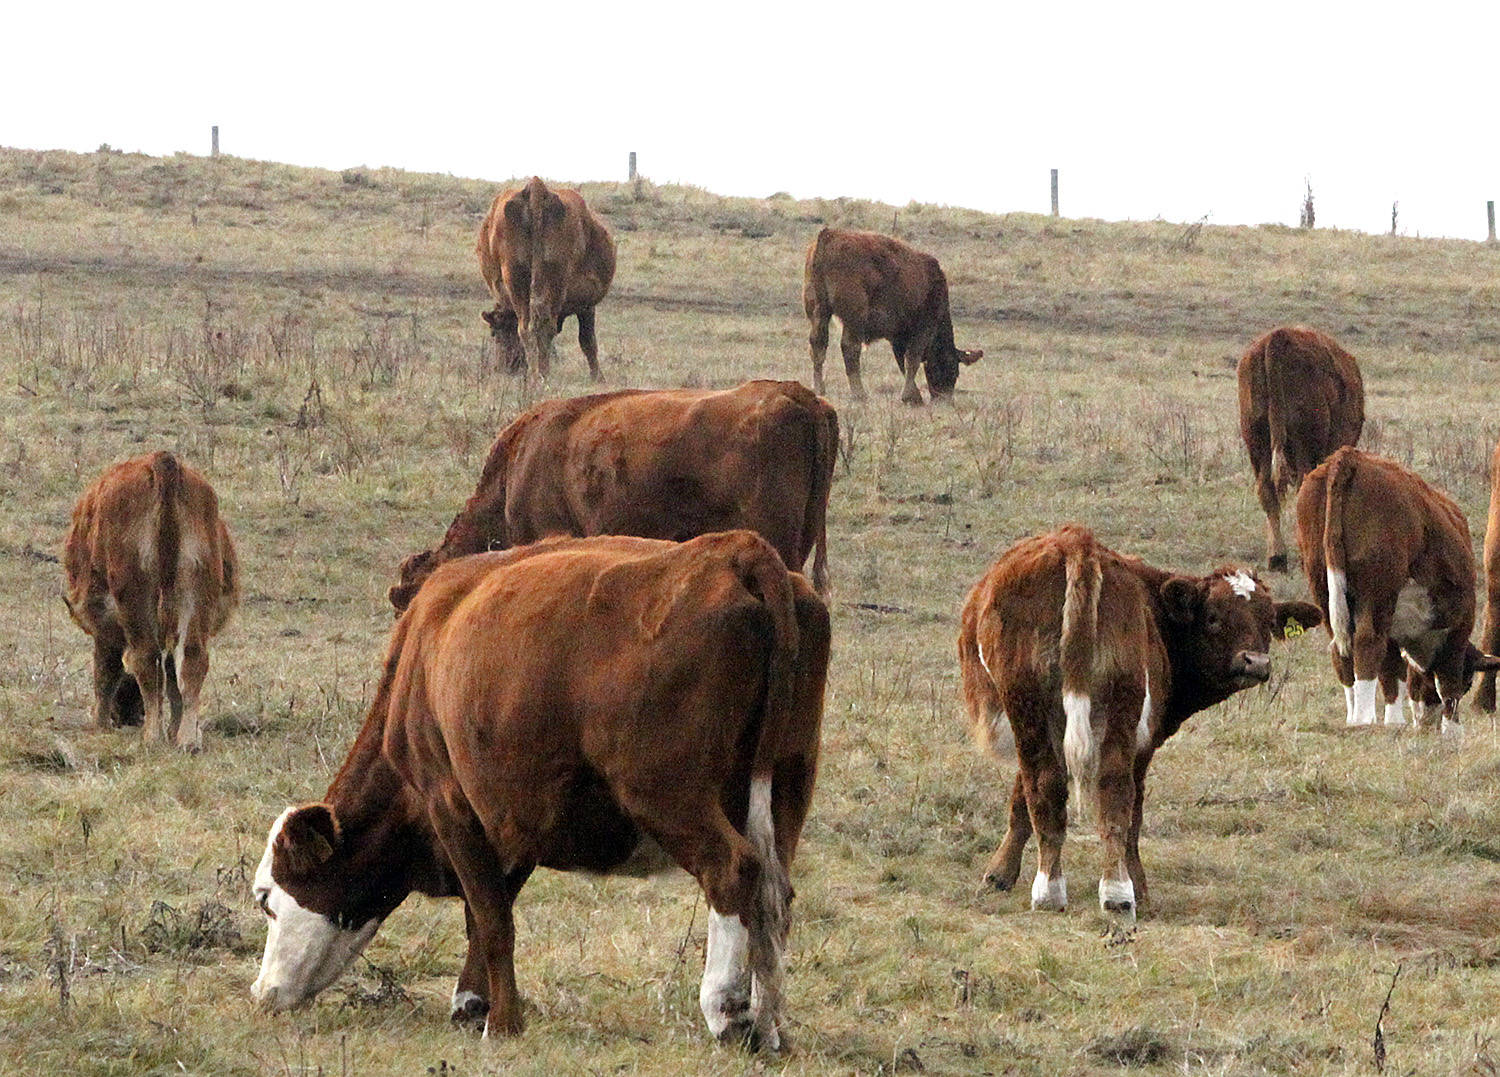 Bovine TB back on radar after slaughtered BC cow tests positive